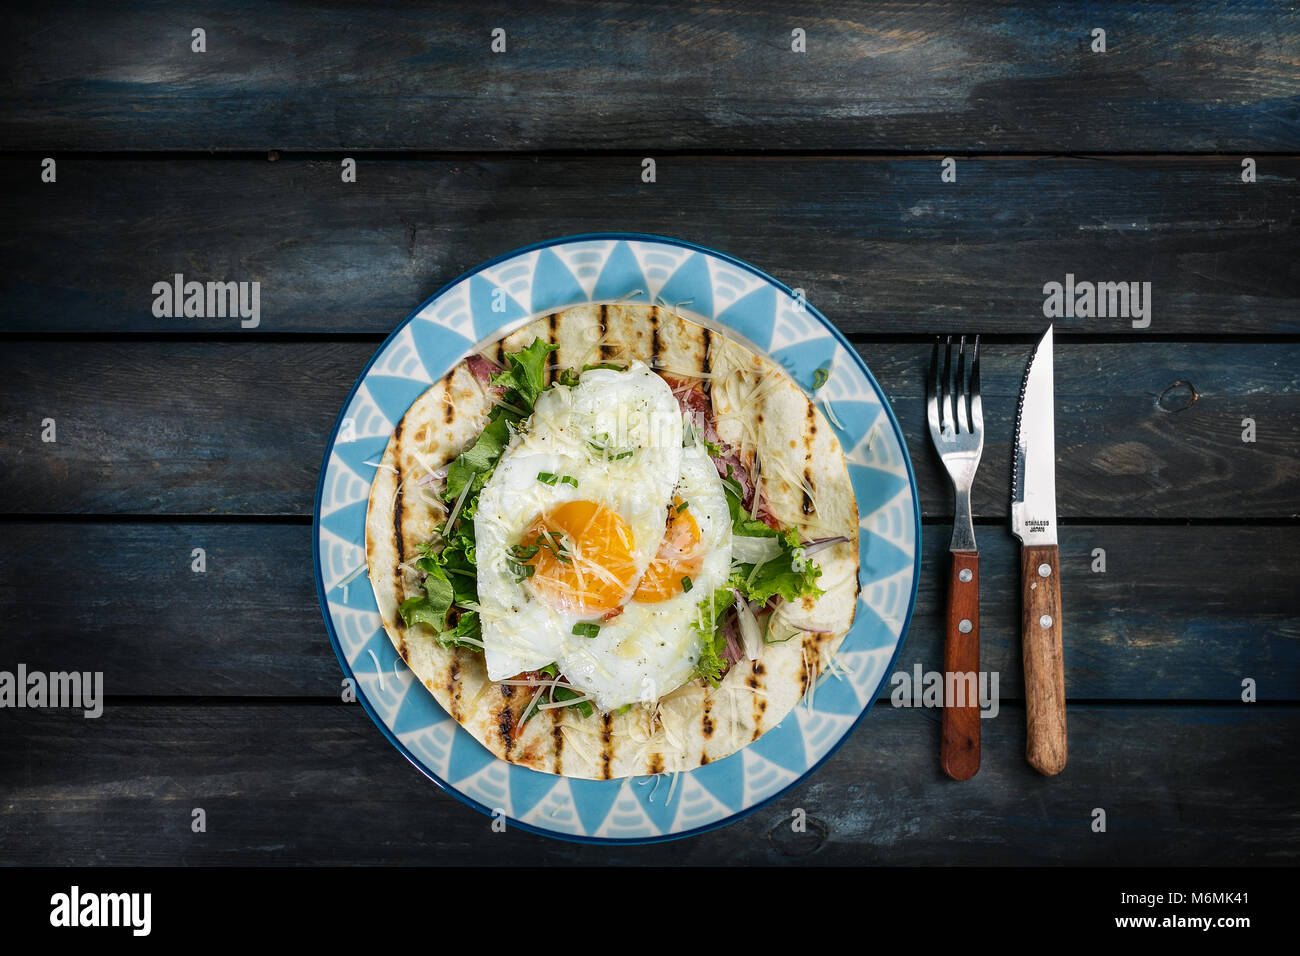 Spiegeleier auf Mehl Tortilla mit grünem Salat und Käse. Nützliche Frühstück oder Mittagessen Idee. Gabel, Messer und schönen Teller auf einem farbigen Hintergrund aus Holz. Ansicht von oben Stockfoto